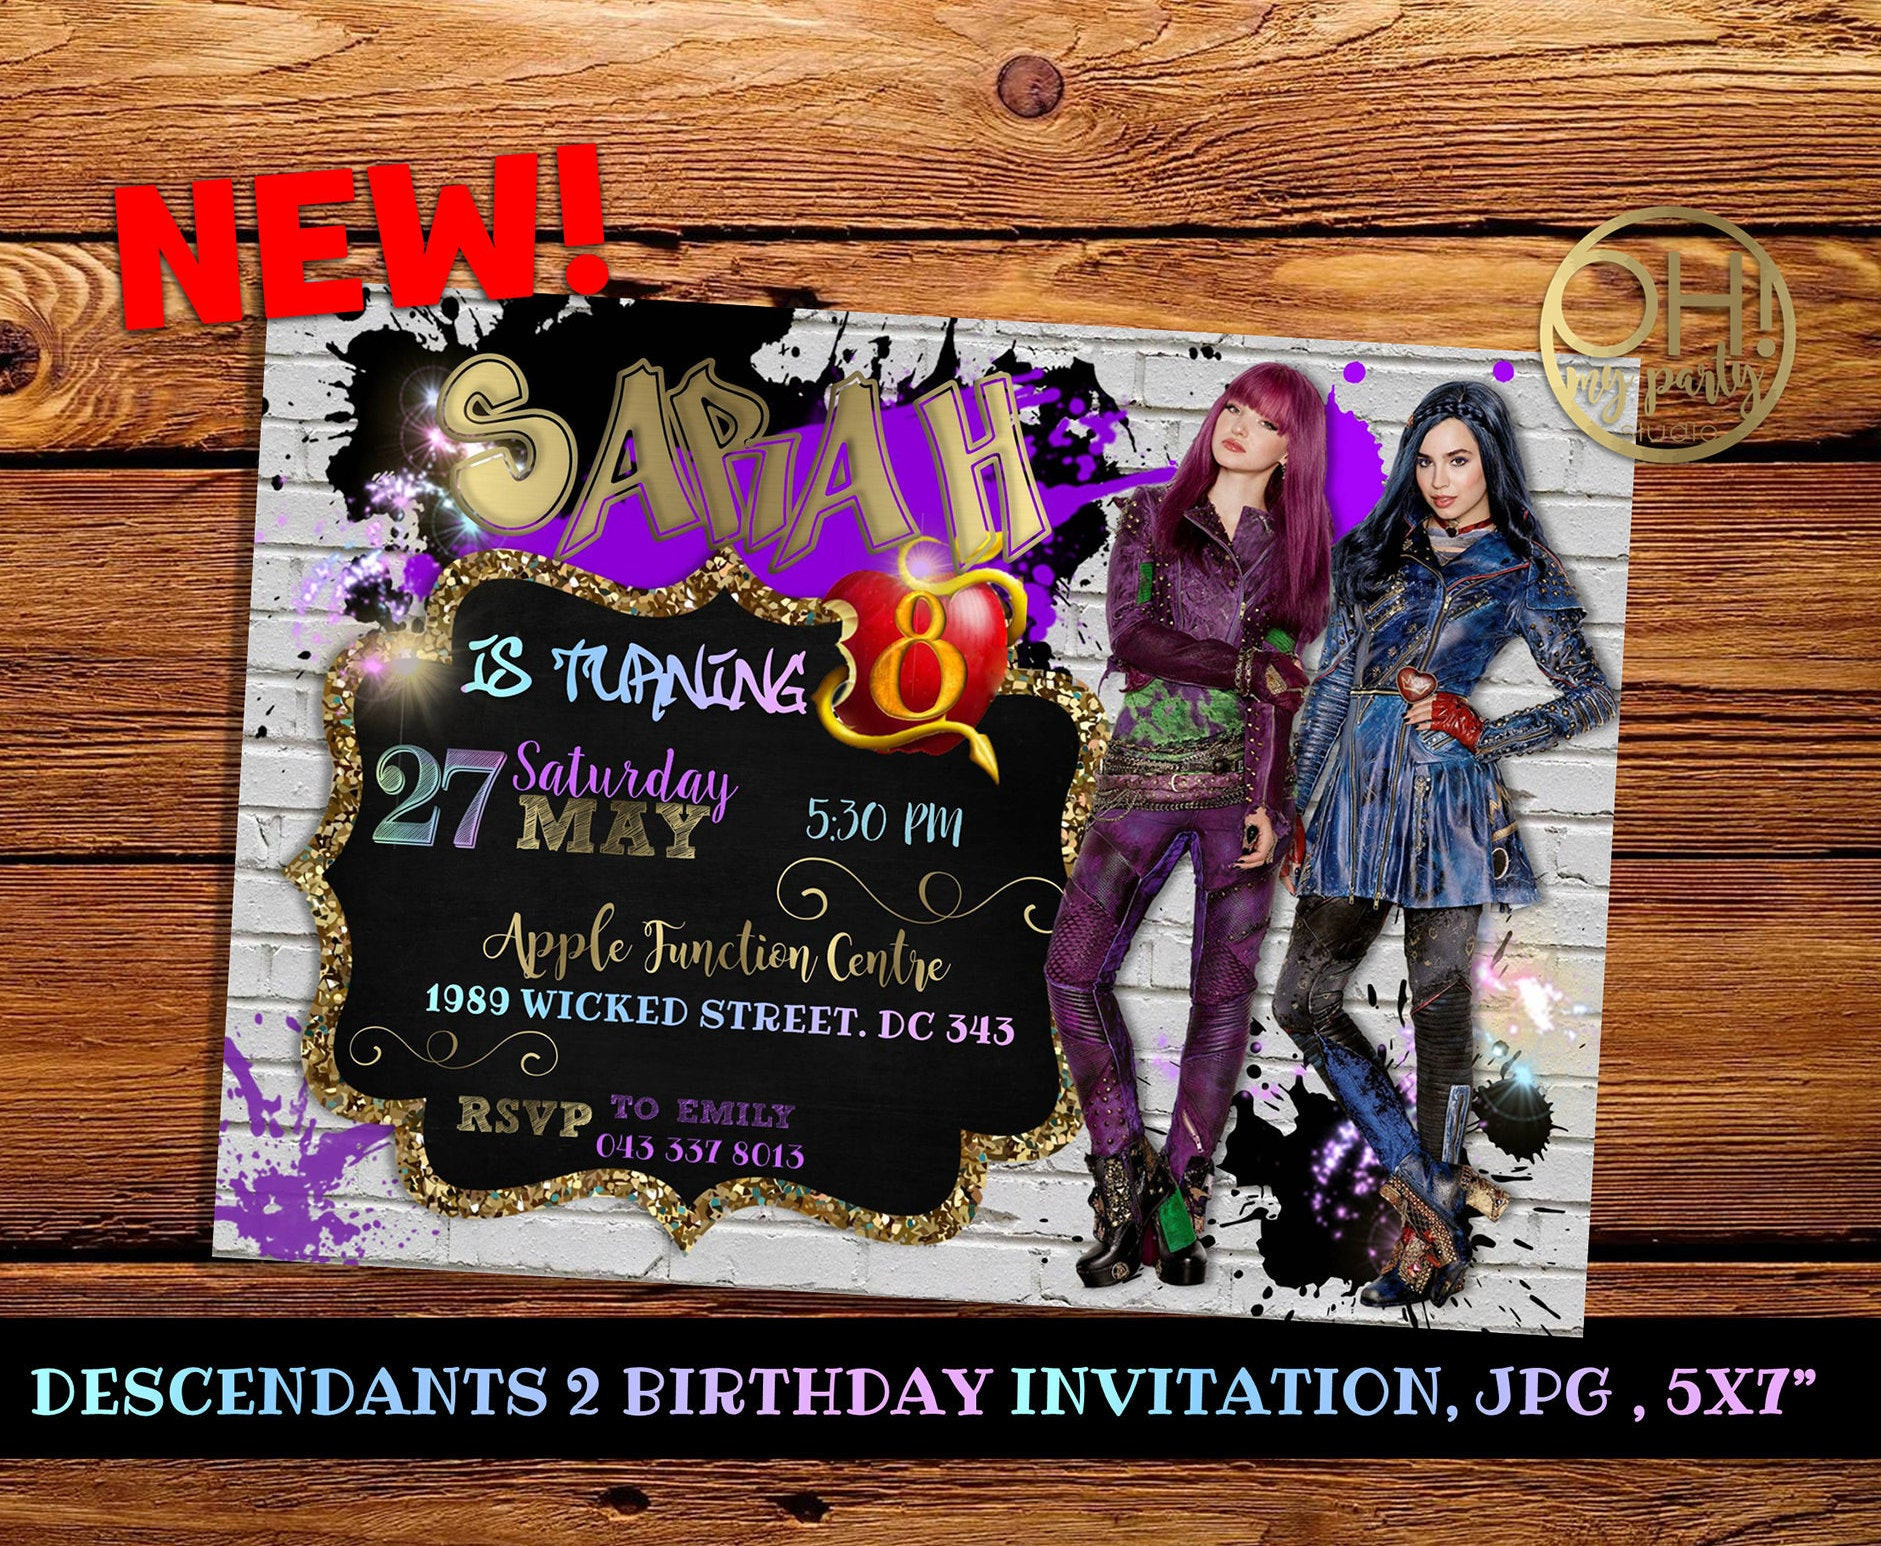 Best ideas about Descendants 2 Birthday Invitations
. Save or Pin Descendants invitationsdescendants party descendants party Now.